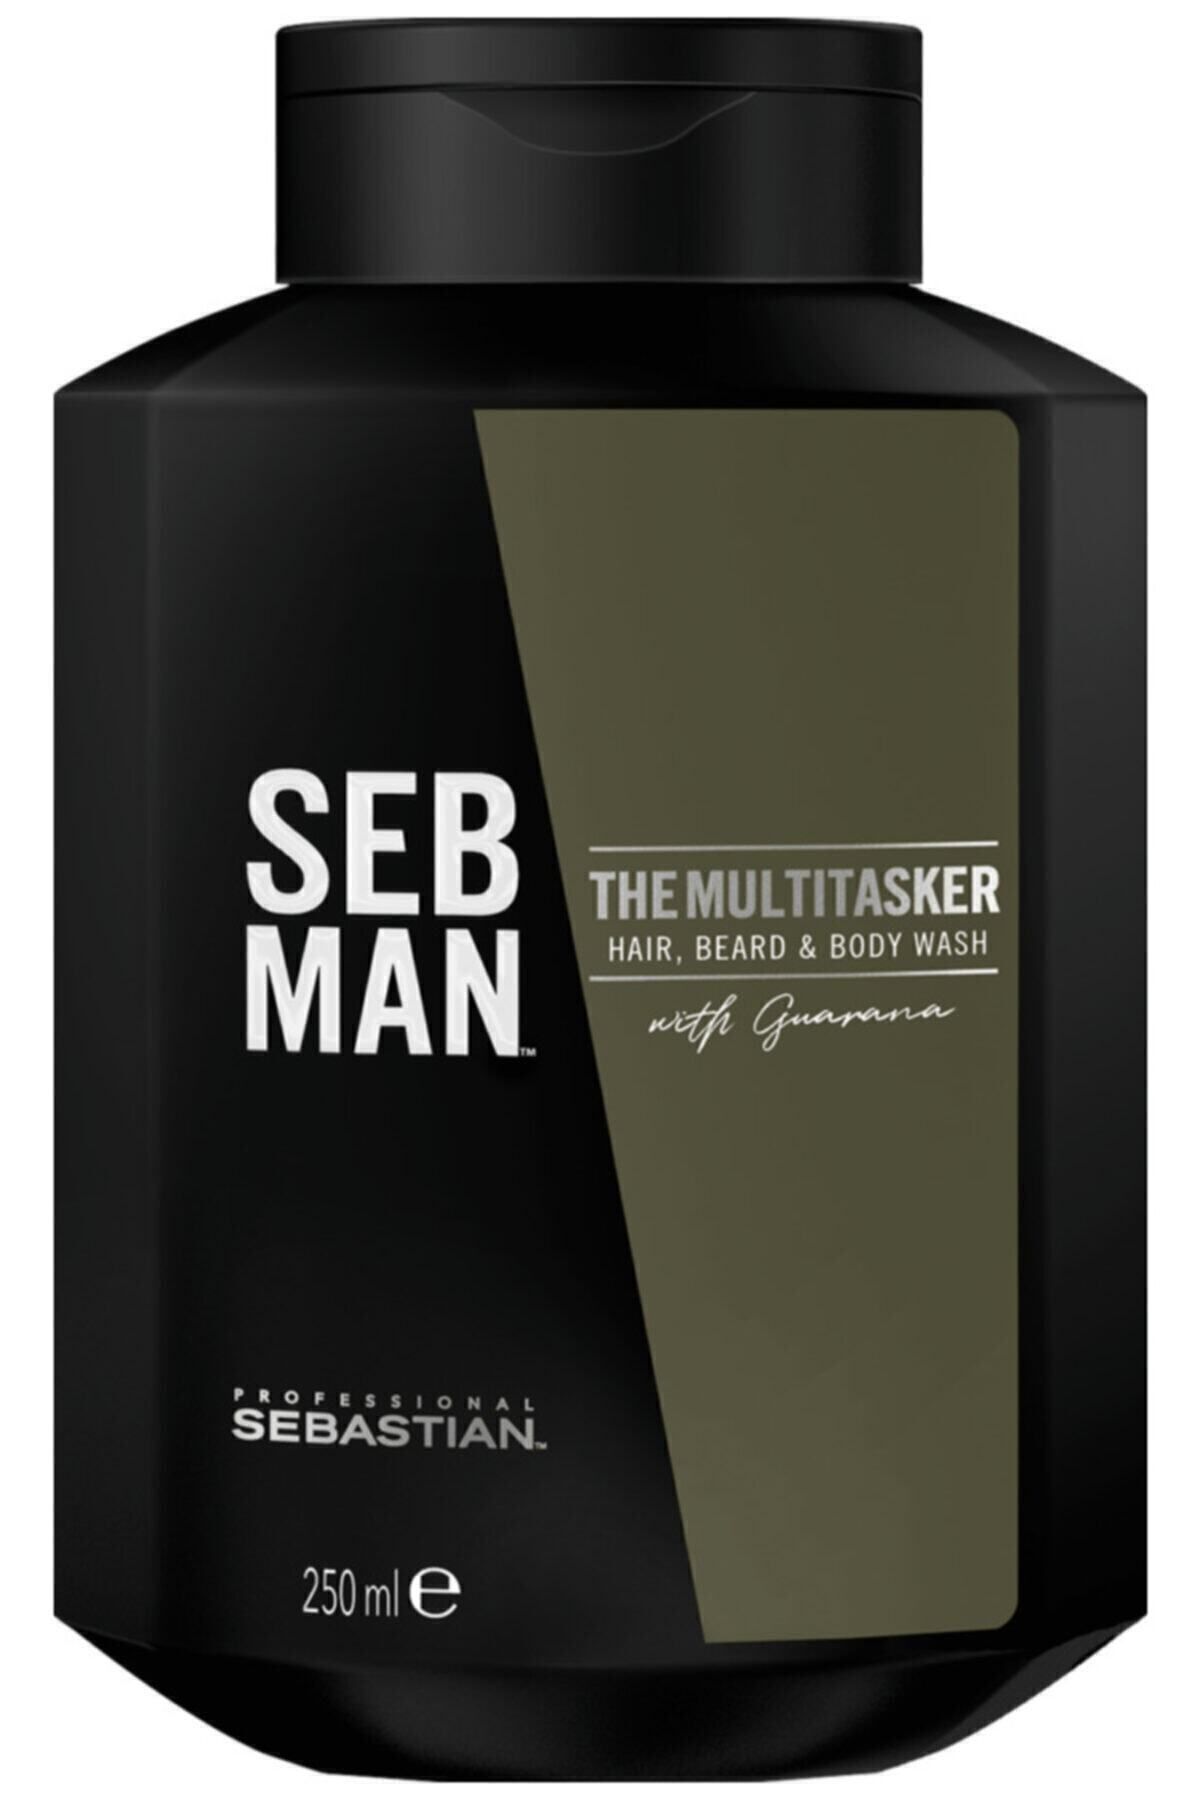 Sebastian SEB MAN THE MULTİ TASKER BODY WASH 250 ML KEYON298